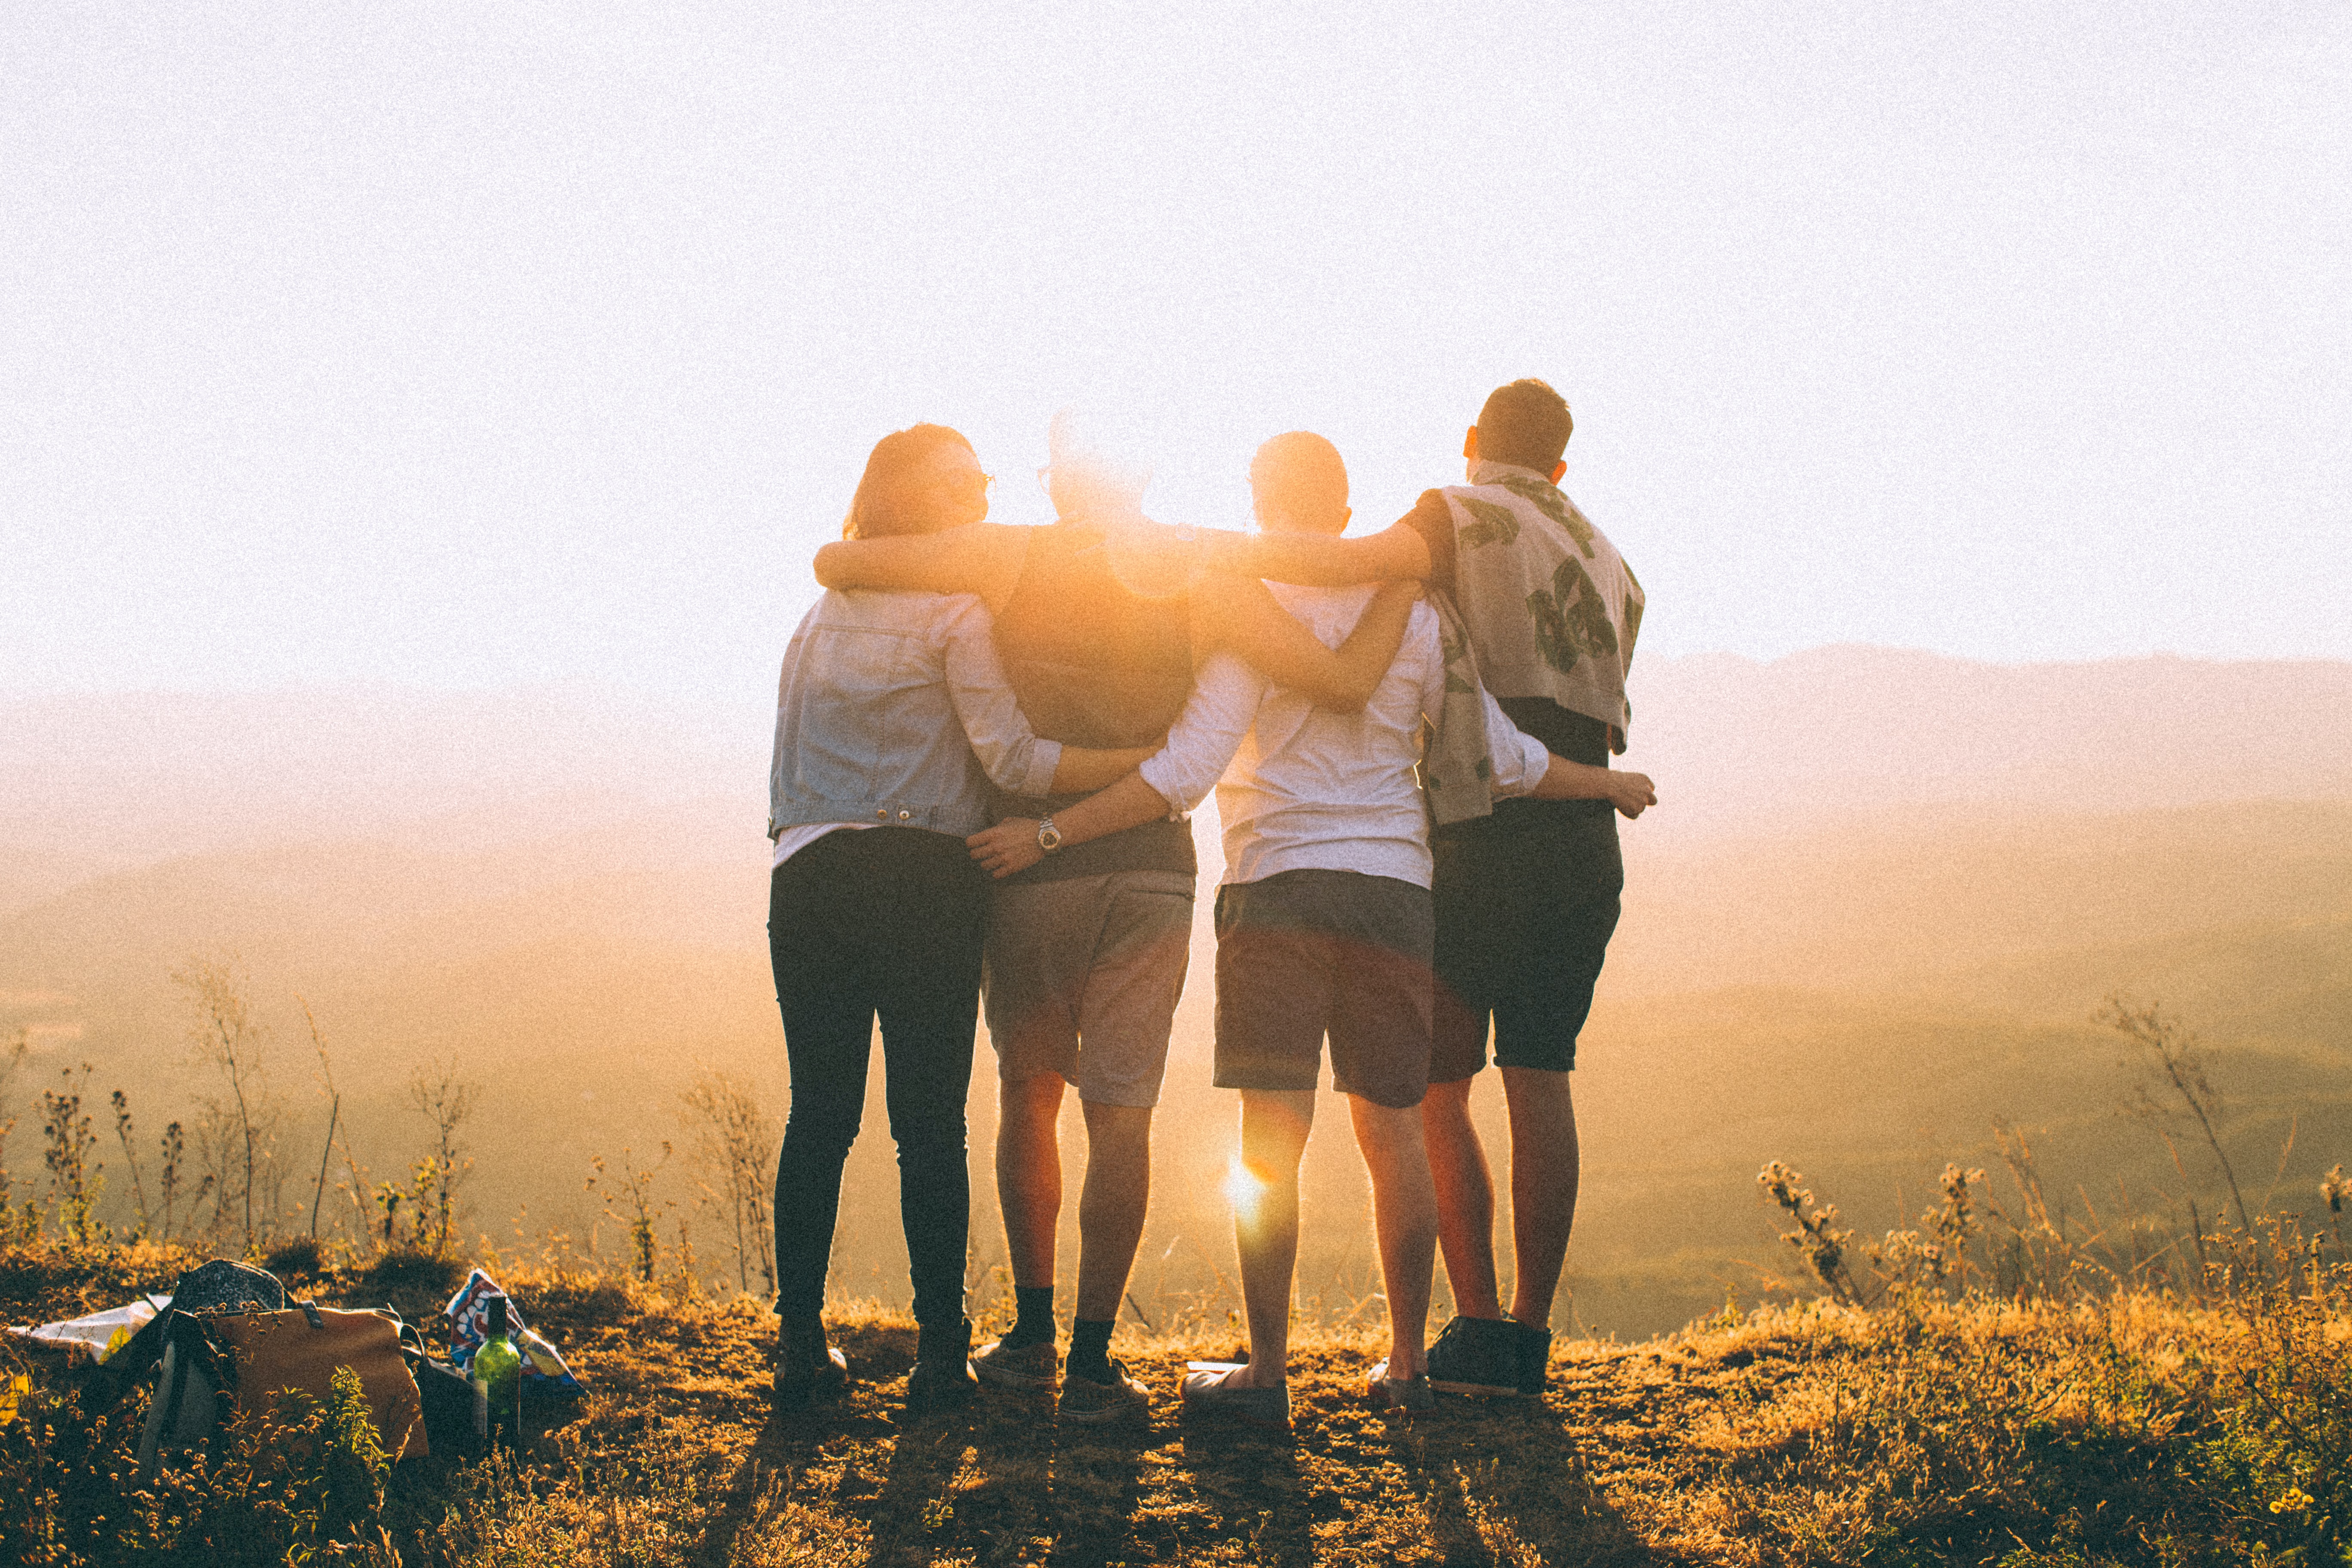 Imagens com 4 jovens de costa assistindo o pôr do sol